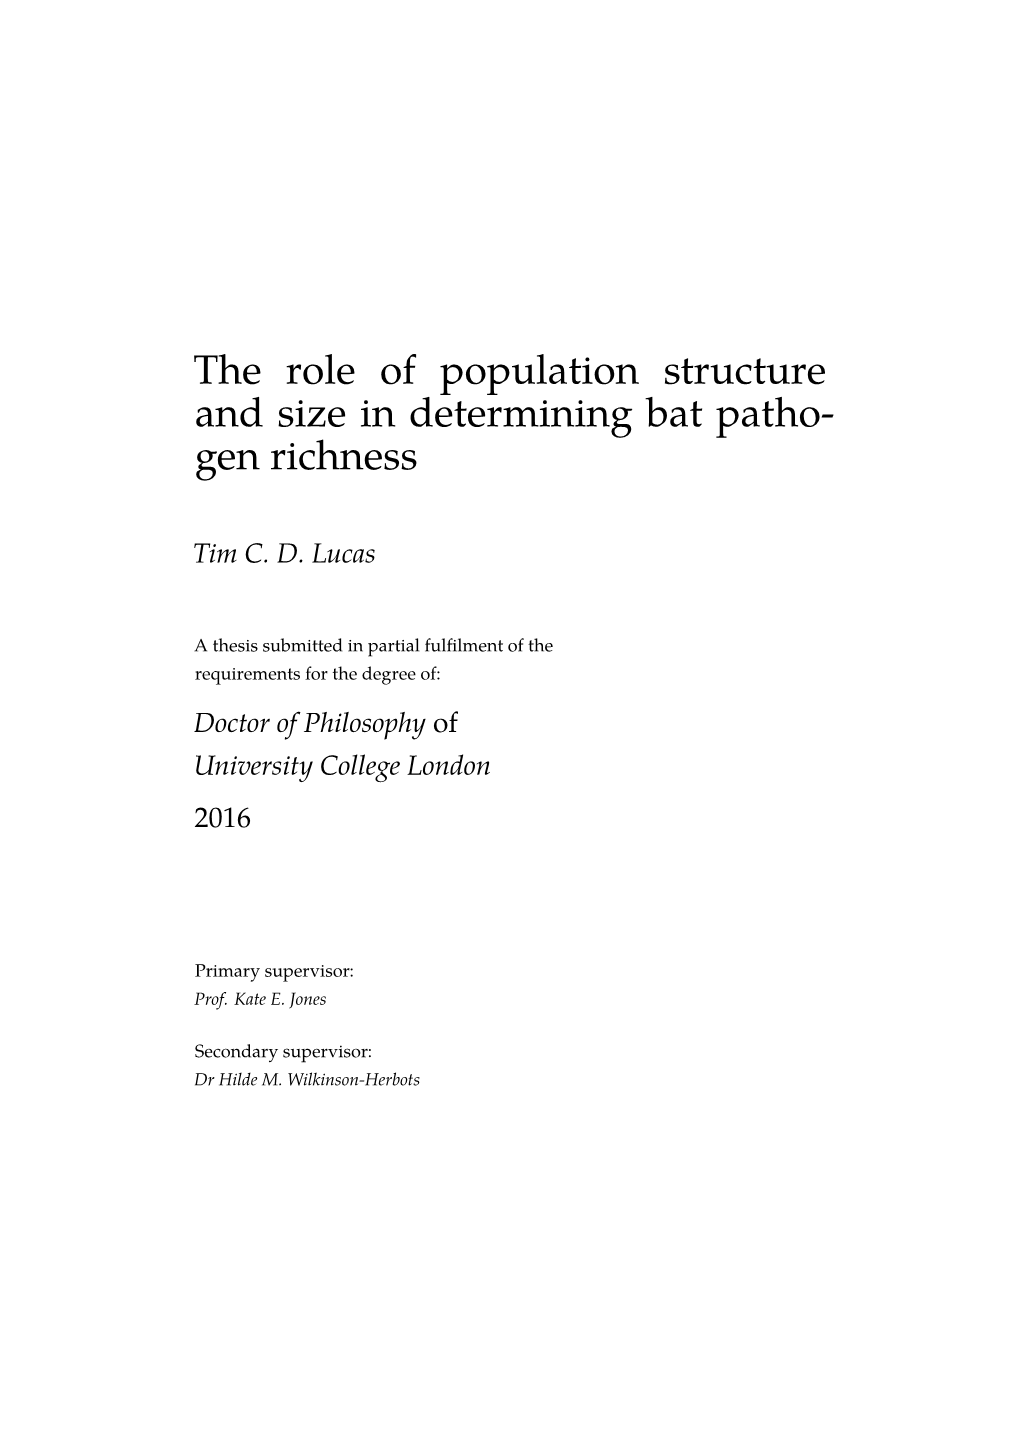 The Role of Population Structureand Size in Determining Bat Pathogen